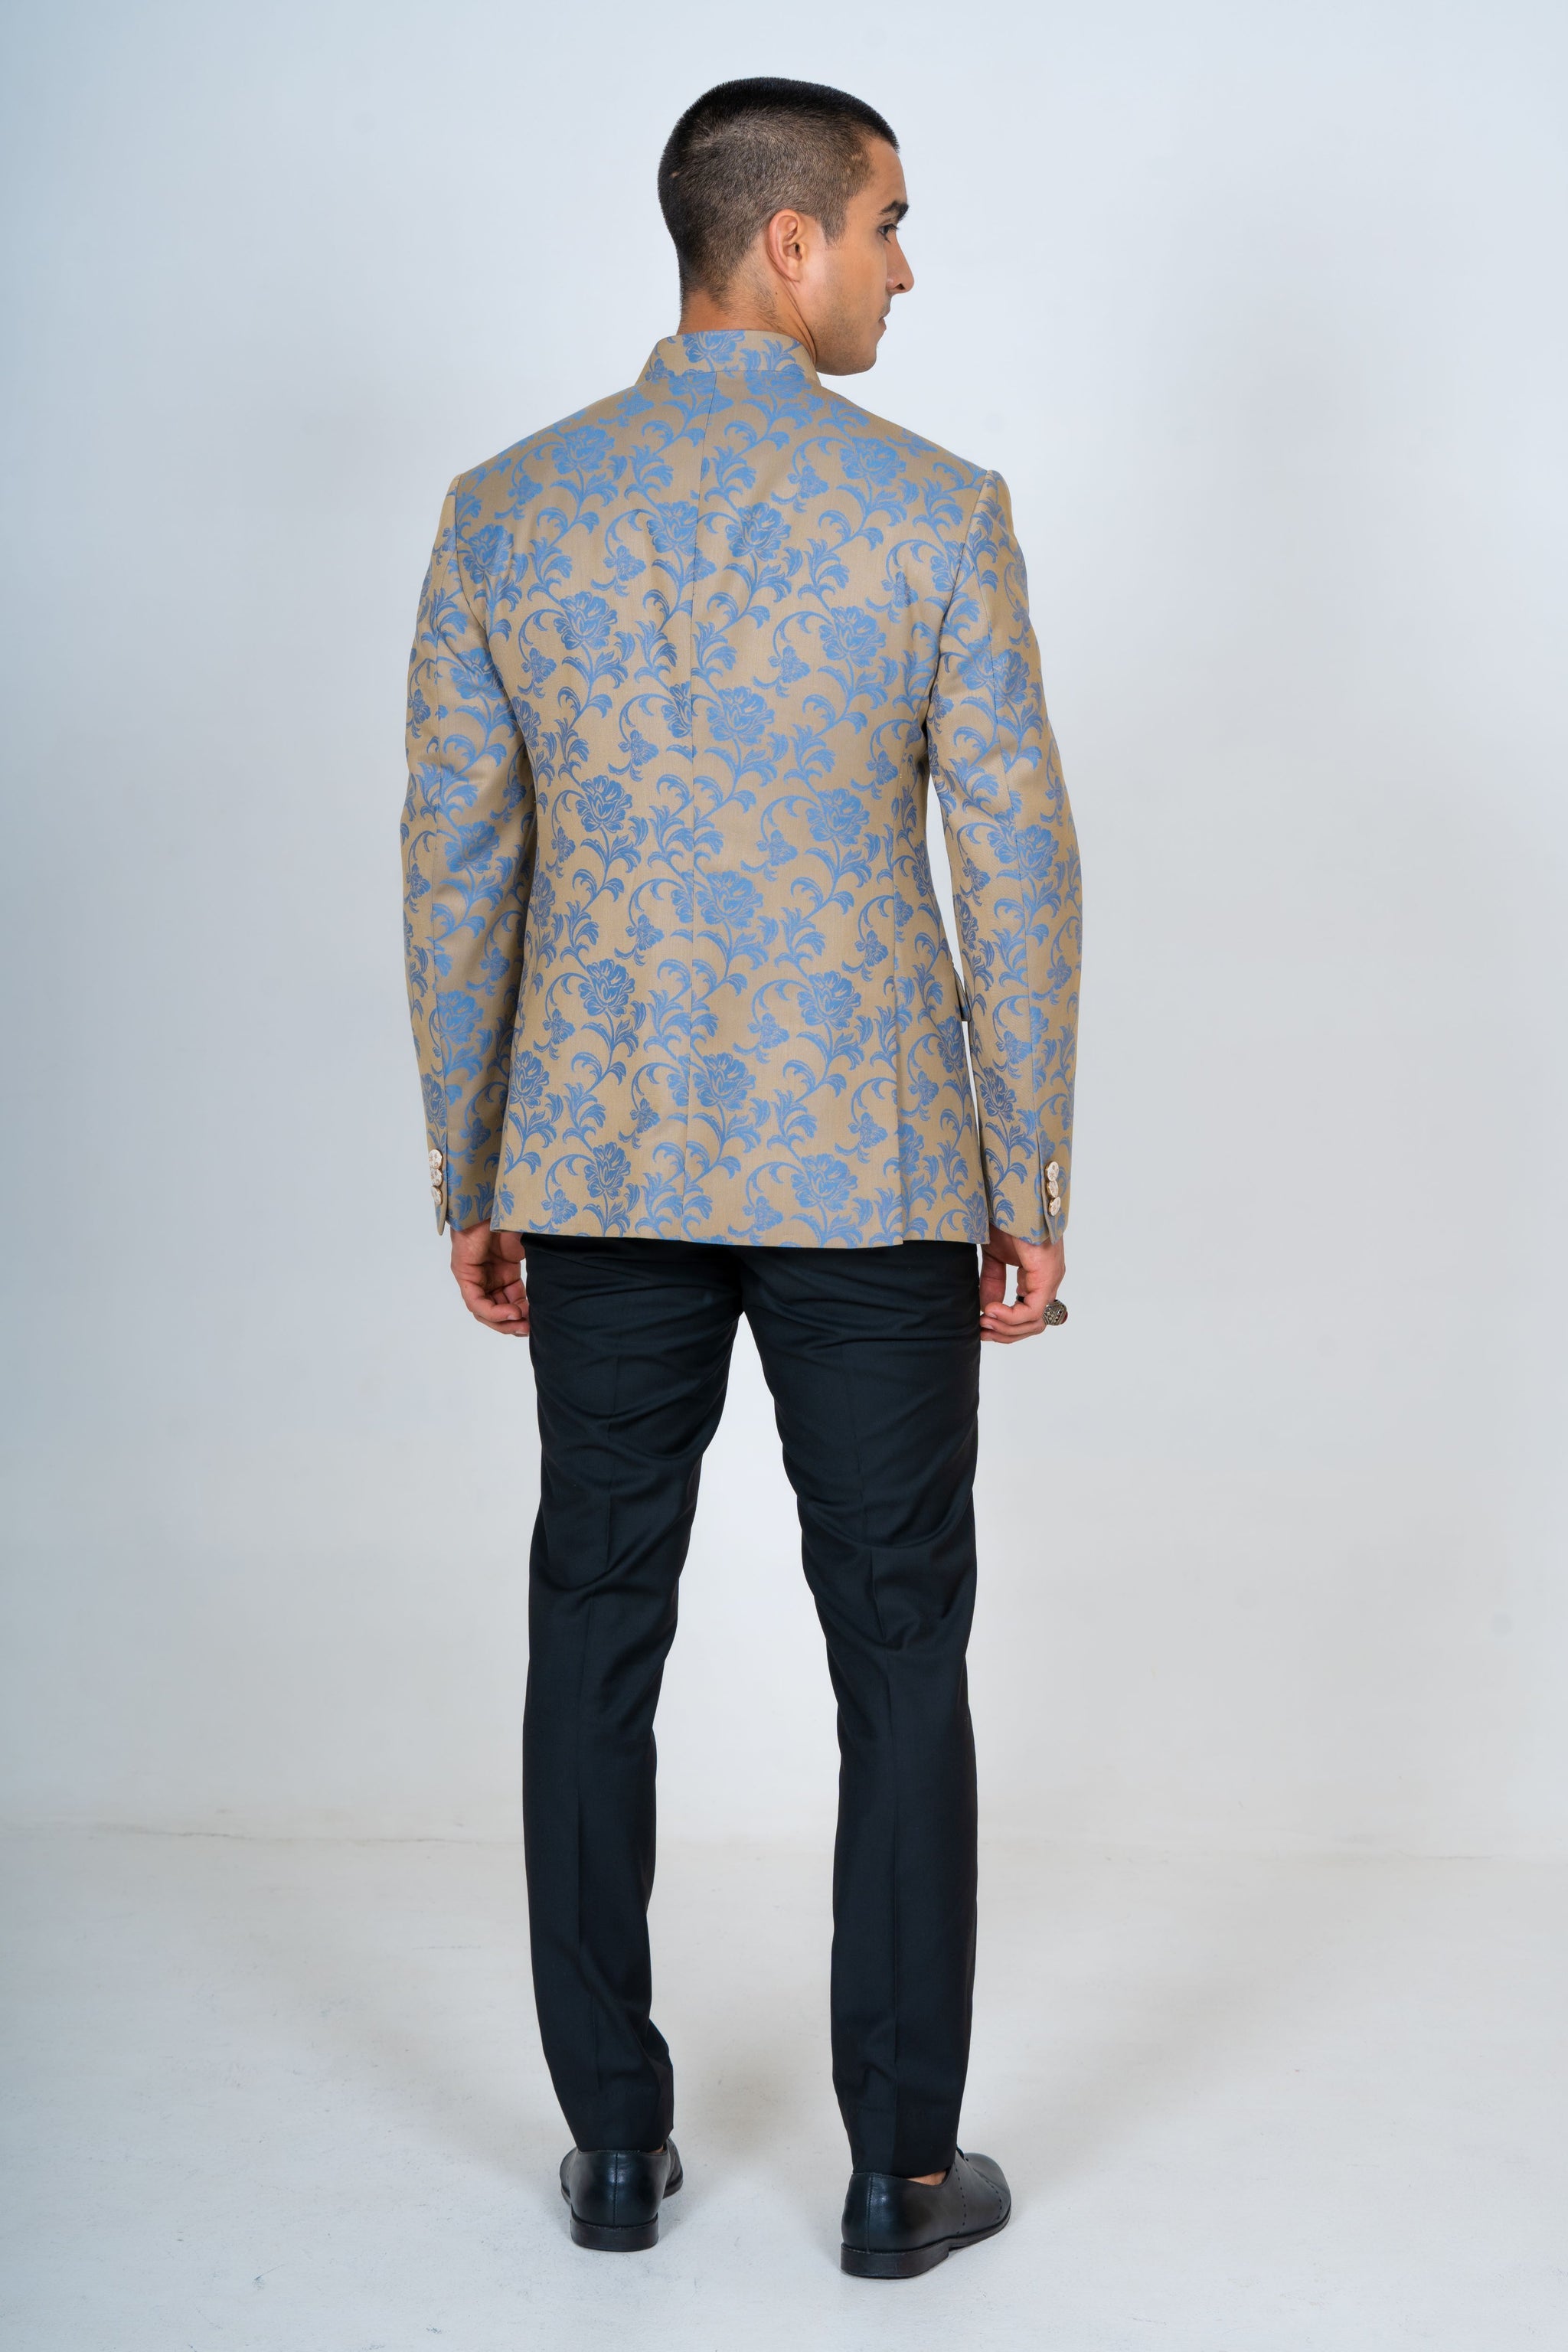 Summer Jacquard Bandhgala Top Suit